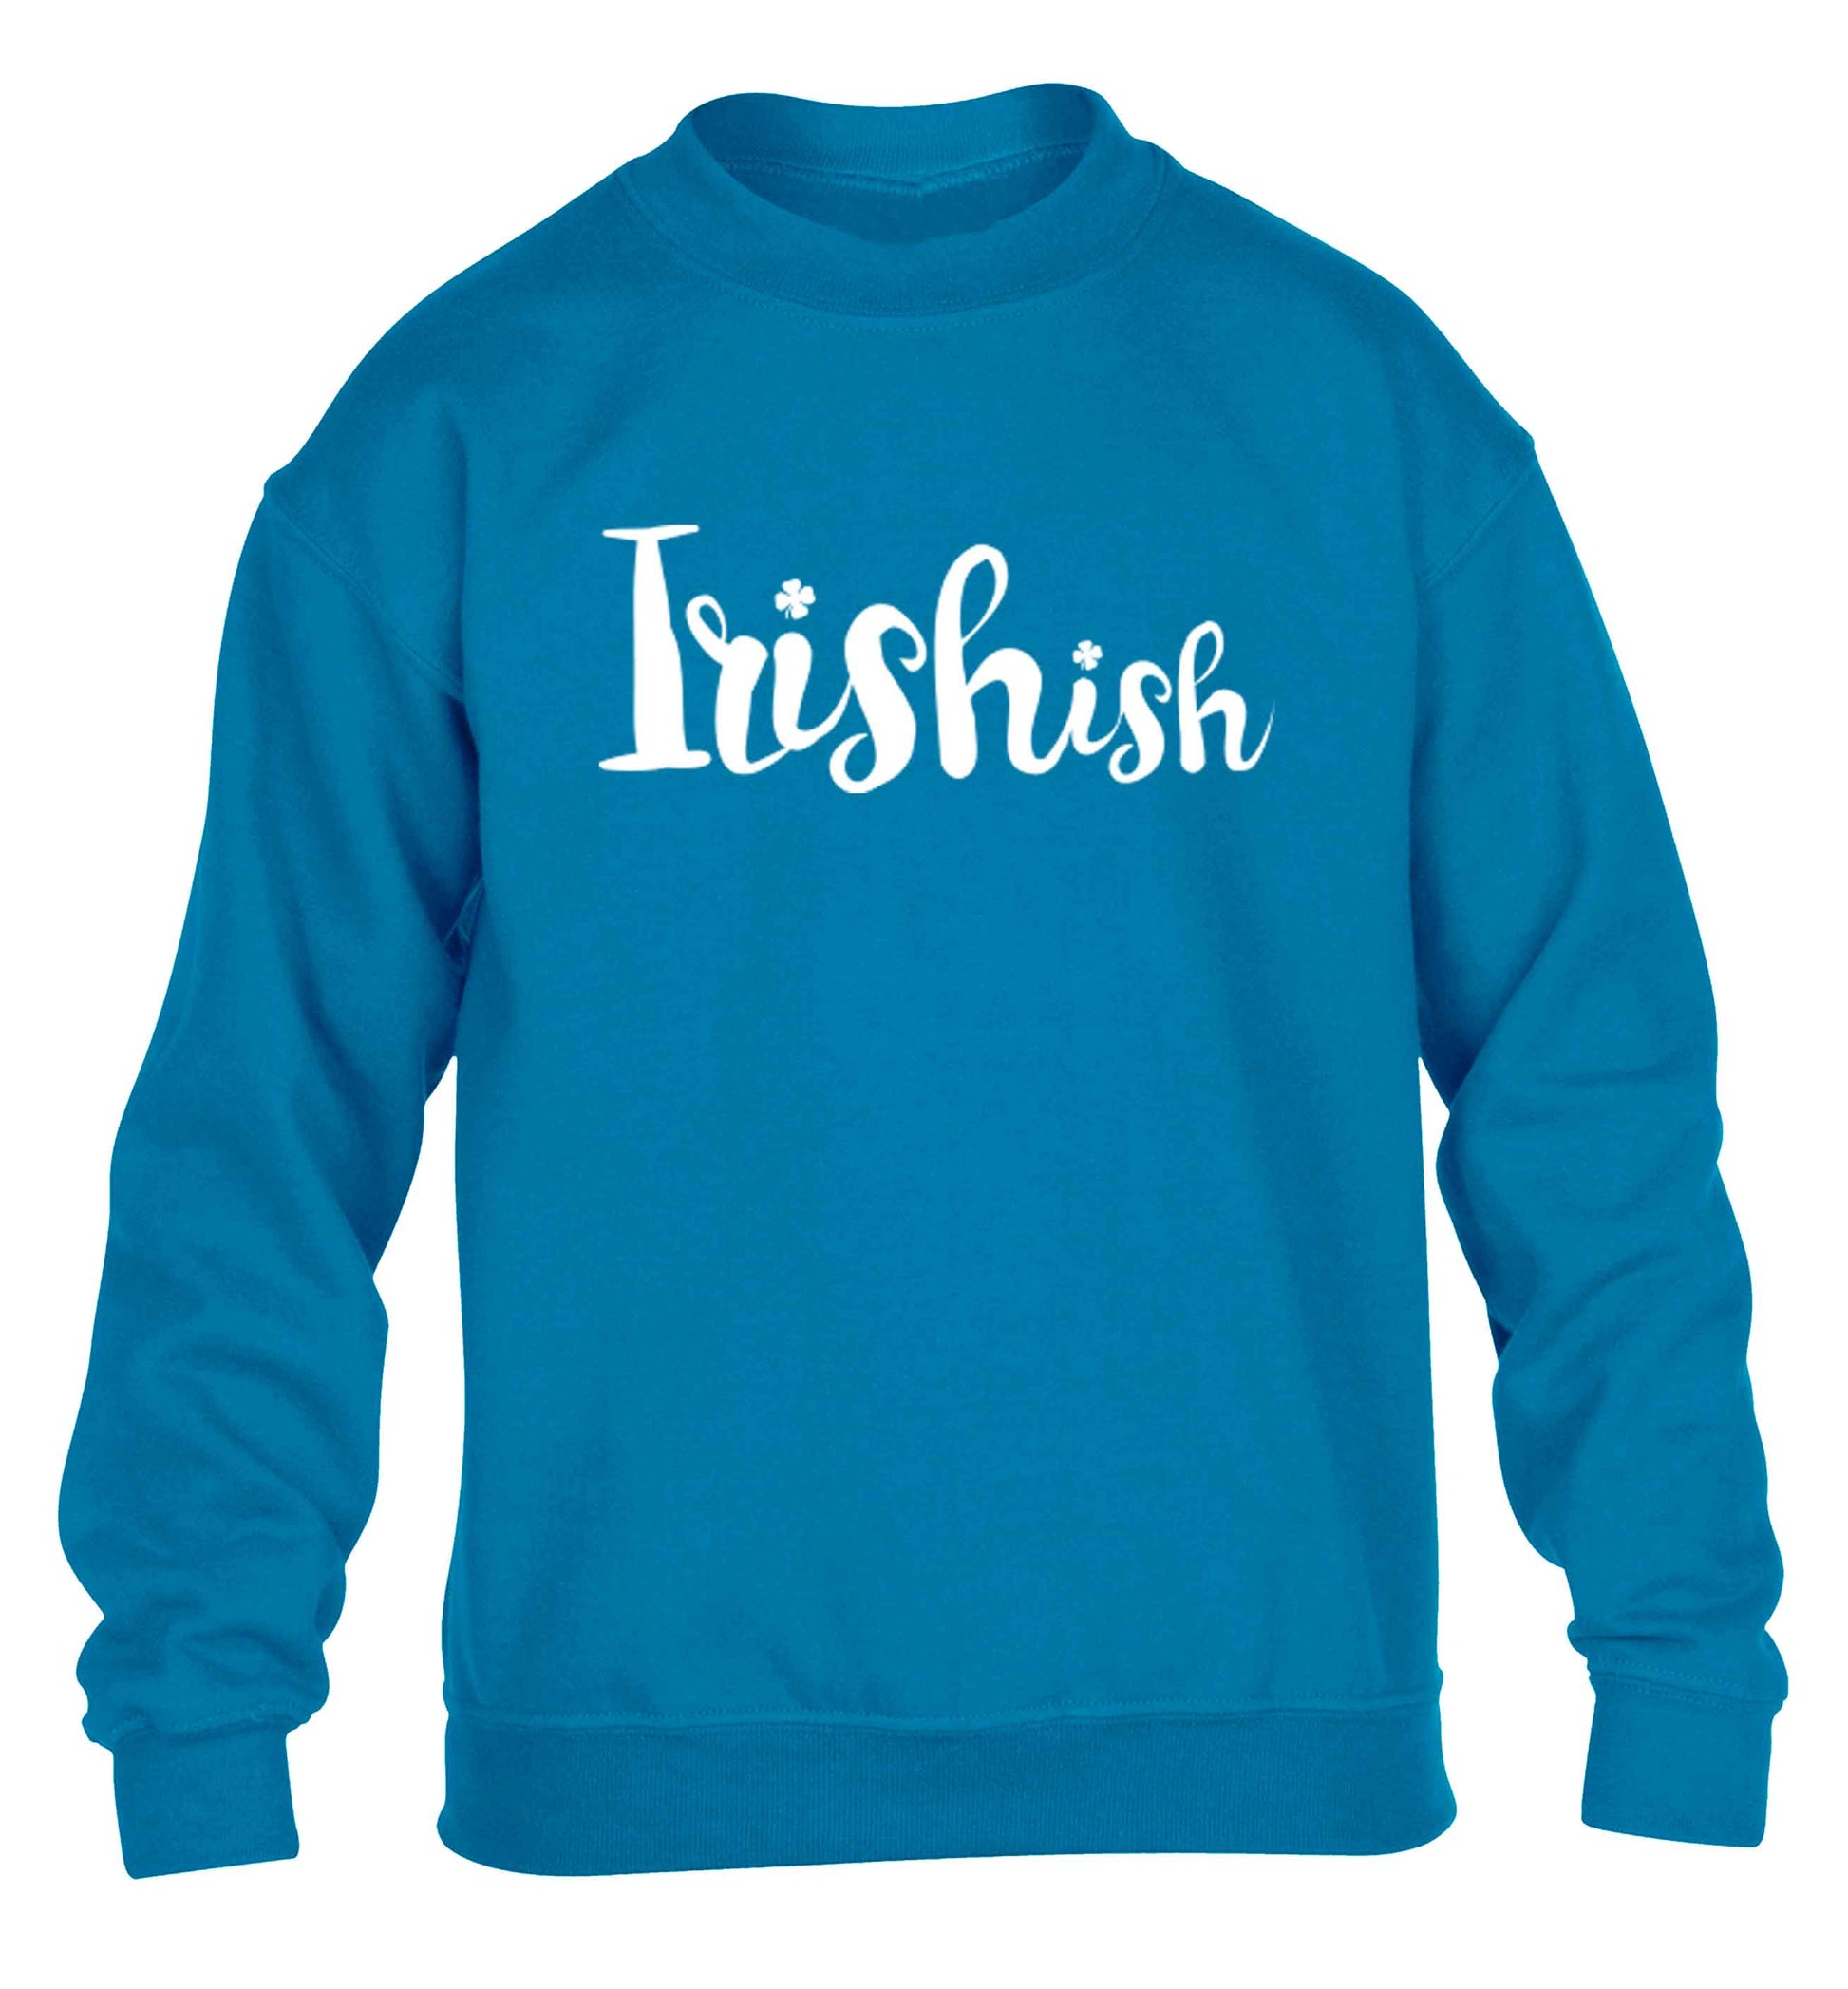 Irishish children's blue sweater 12-13 Years